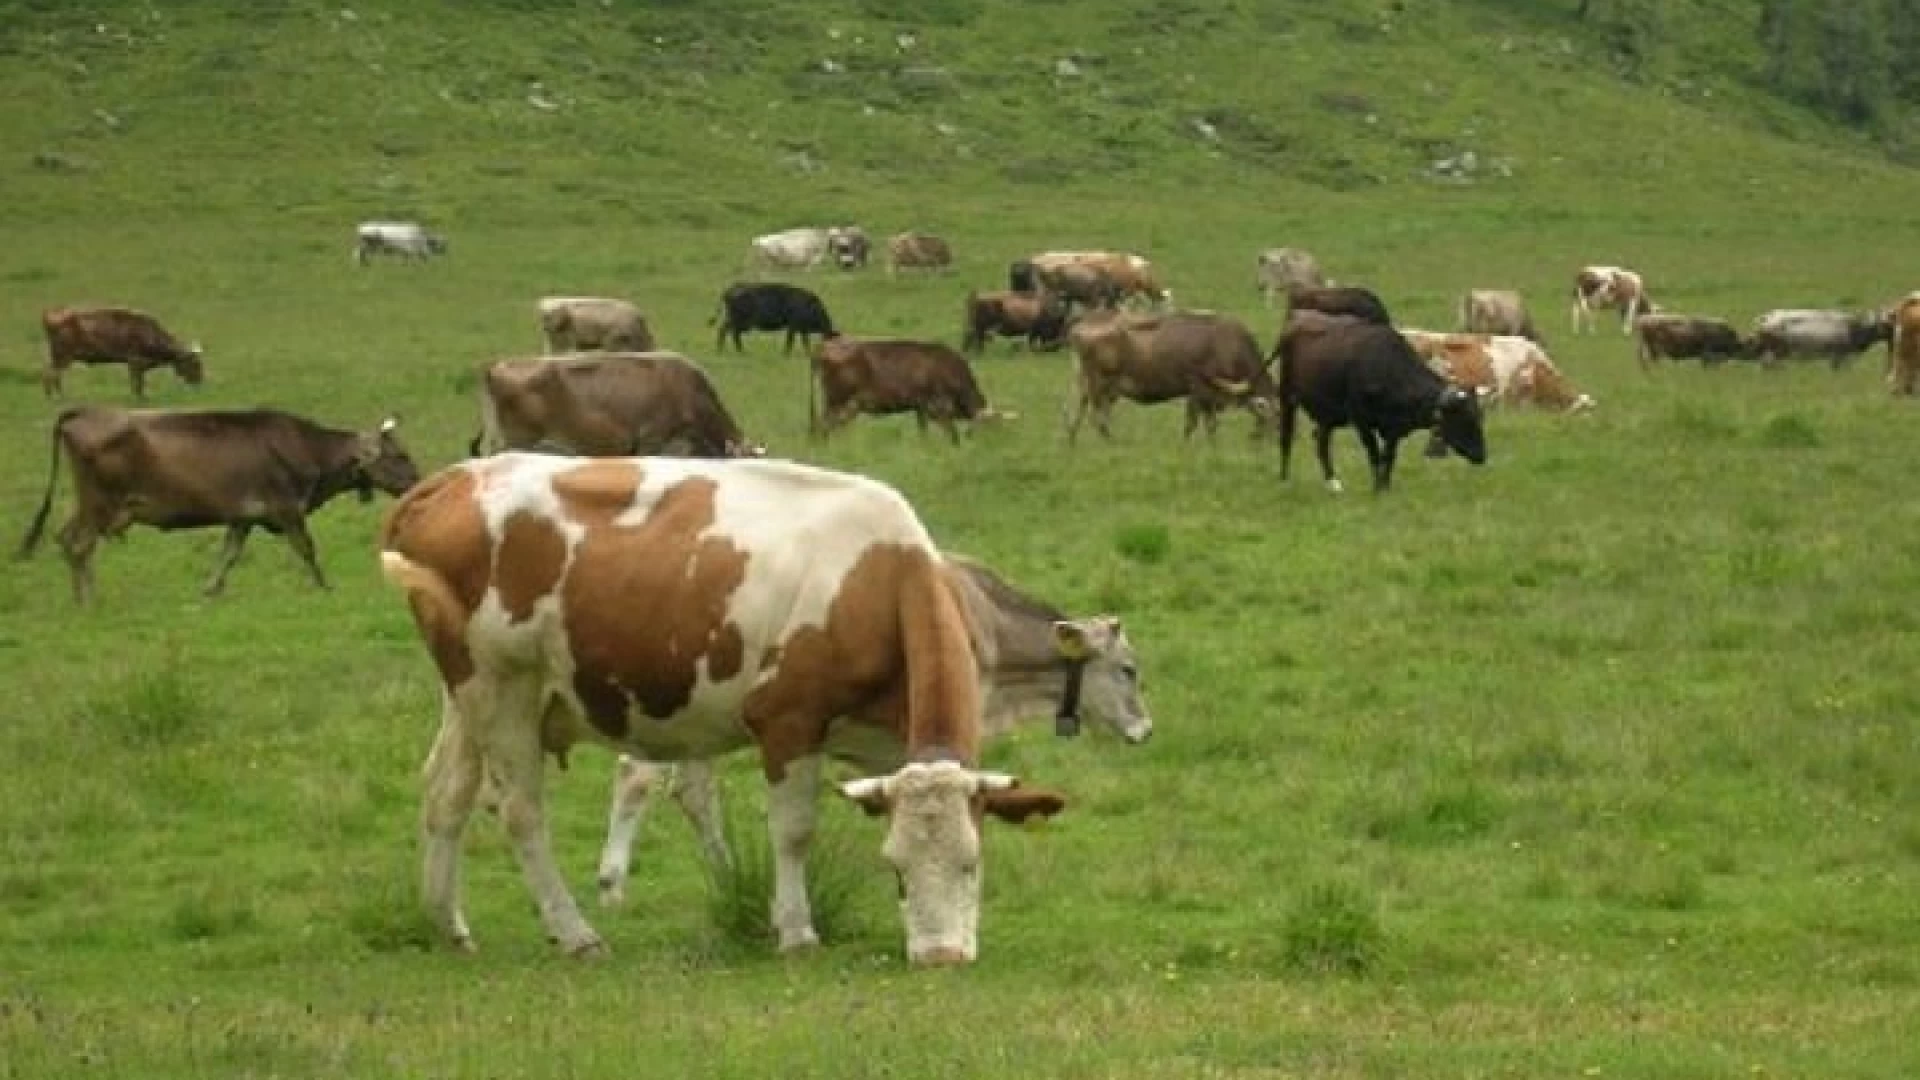 Pascolo bovino abusivo nel parco regionale dell’Olivo. La nota dell’ente che chiede interventi importanti.